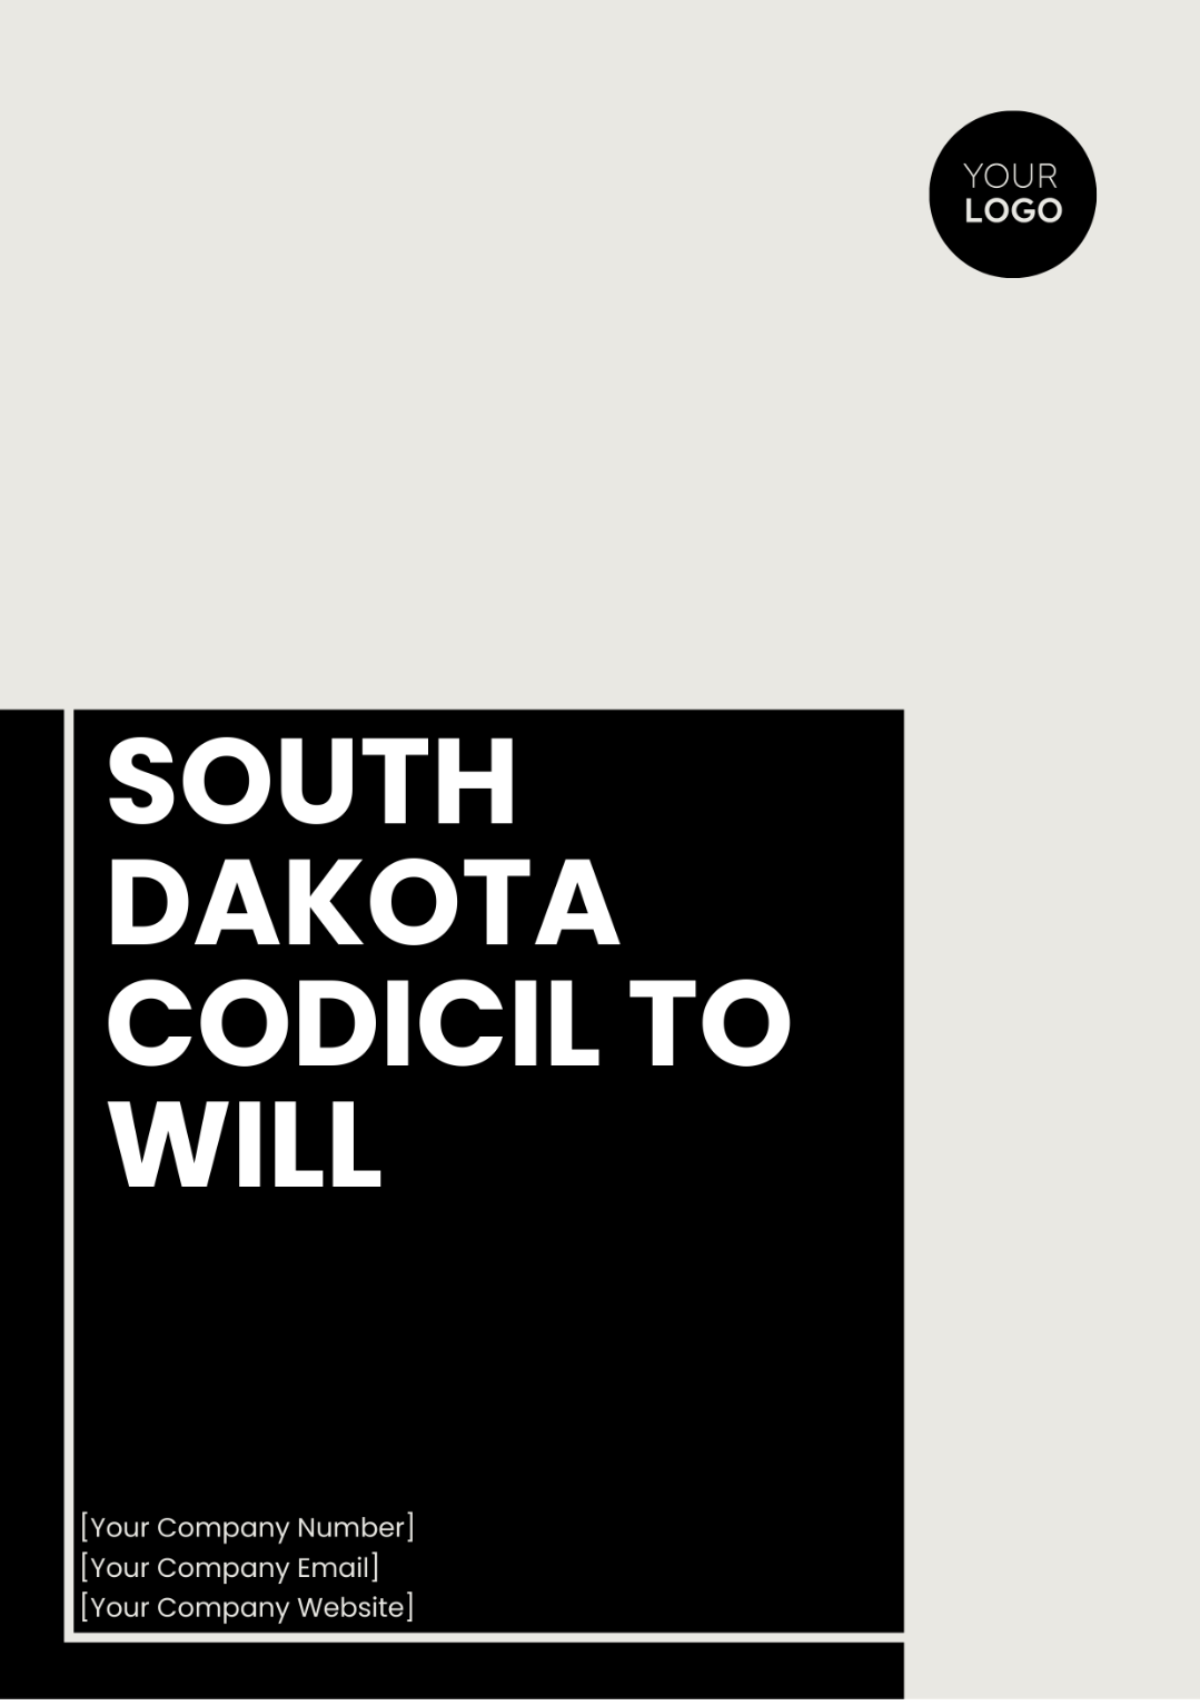 South Dakota Codicil to Will Template